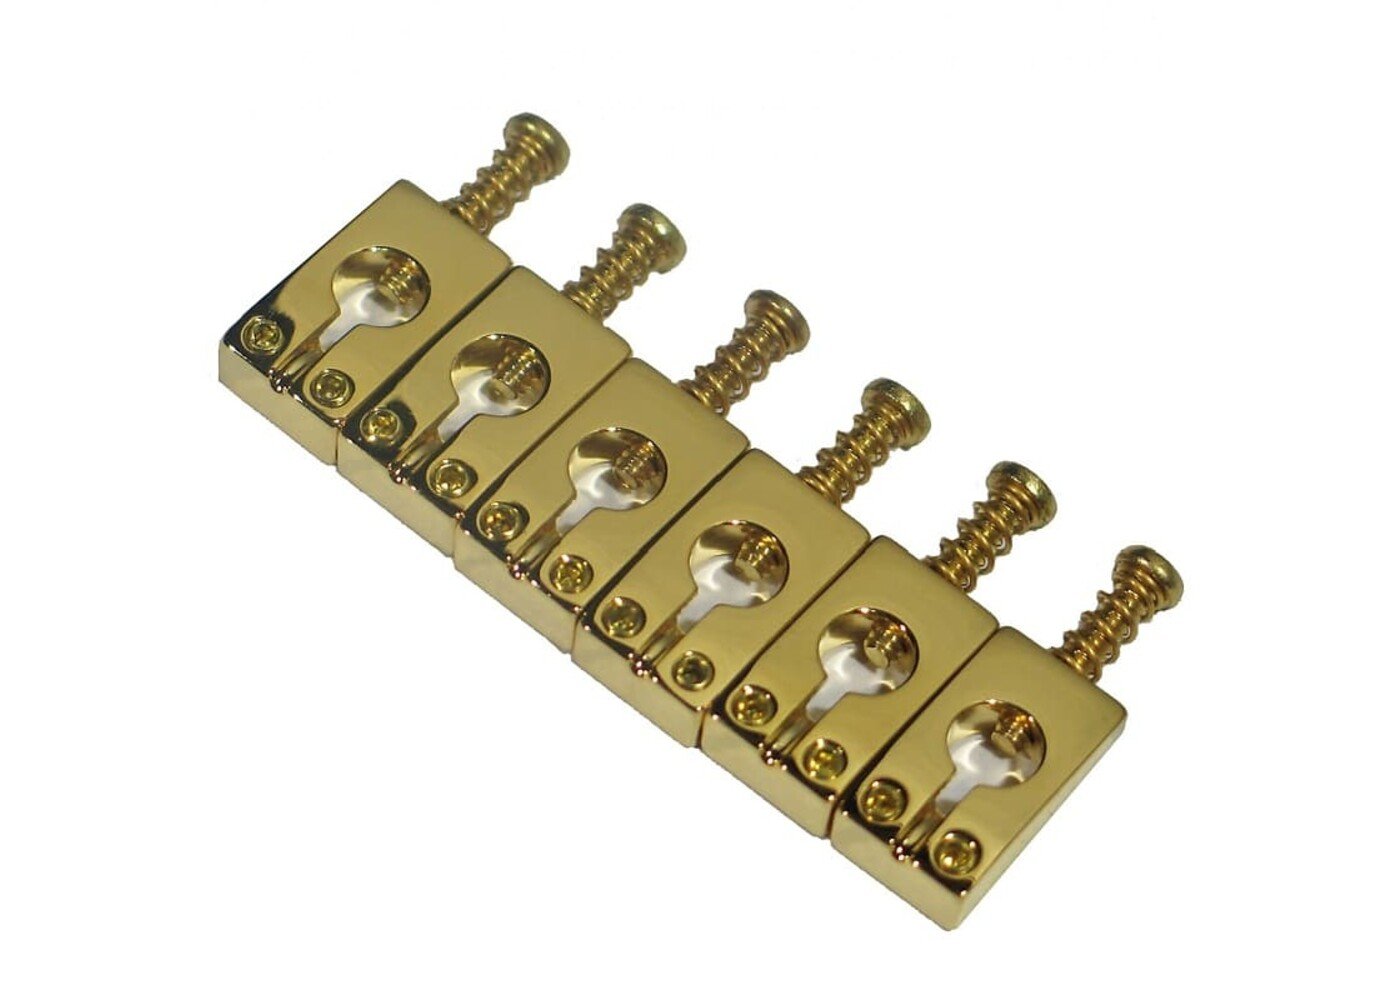 https://cdn.shoplightspeed.com/shops/648981/files/46601667/1400x1000x2/mannmade-usa-mannmade-usa-bridge-saddles-prs-brass.jpg